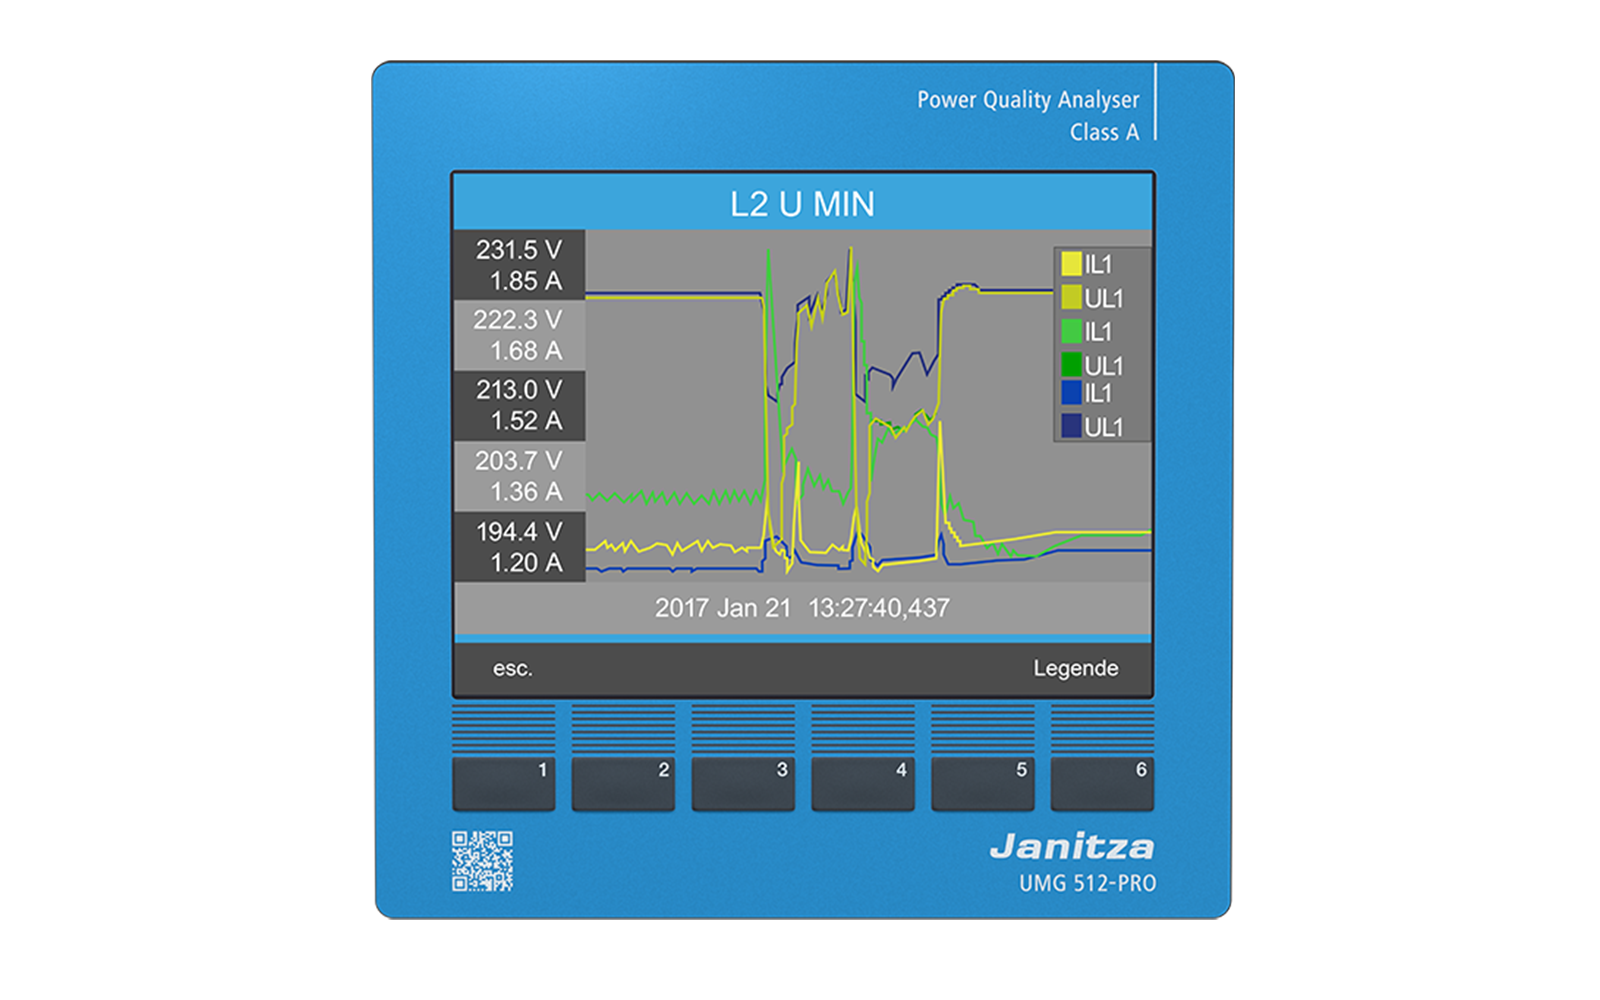 Certified power quality analyzer (Class A according to IEC 61000-4-30) UMG 512-PRO